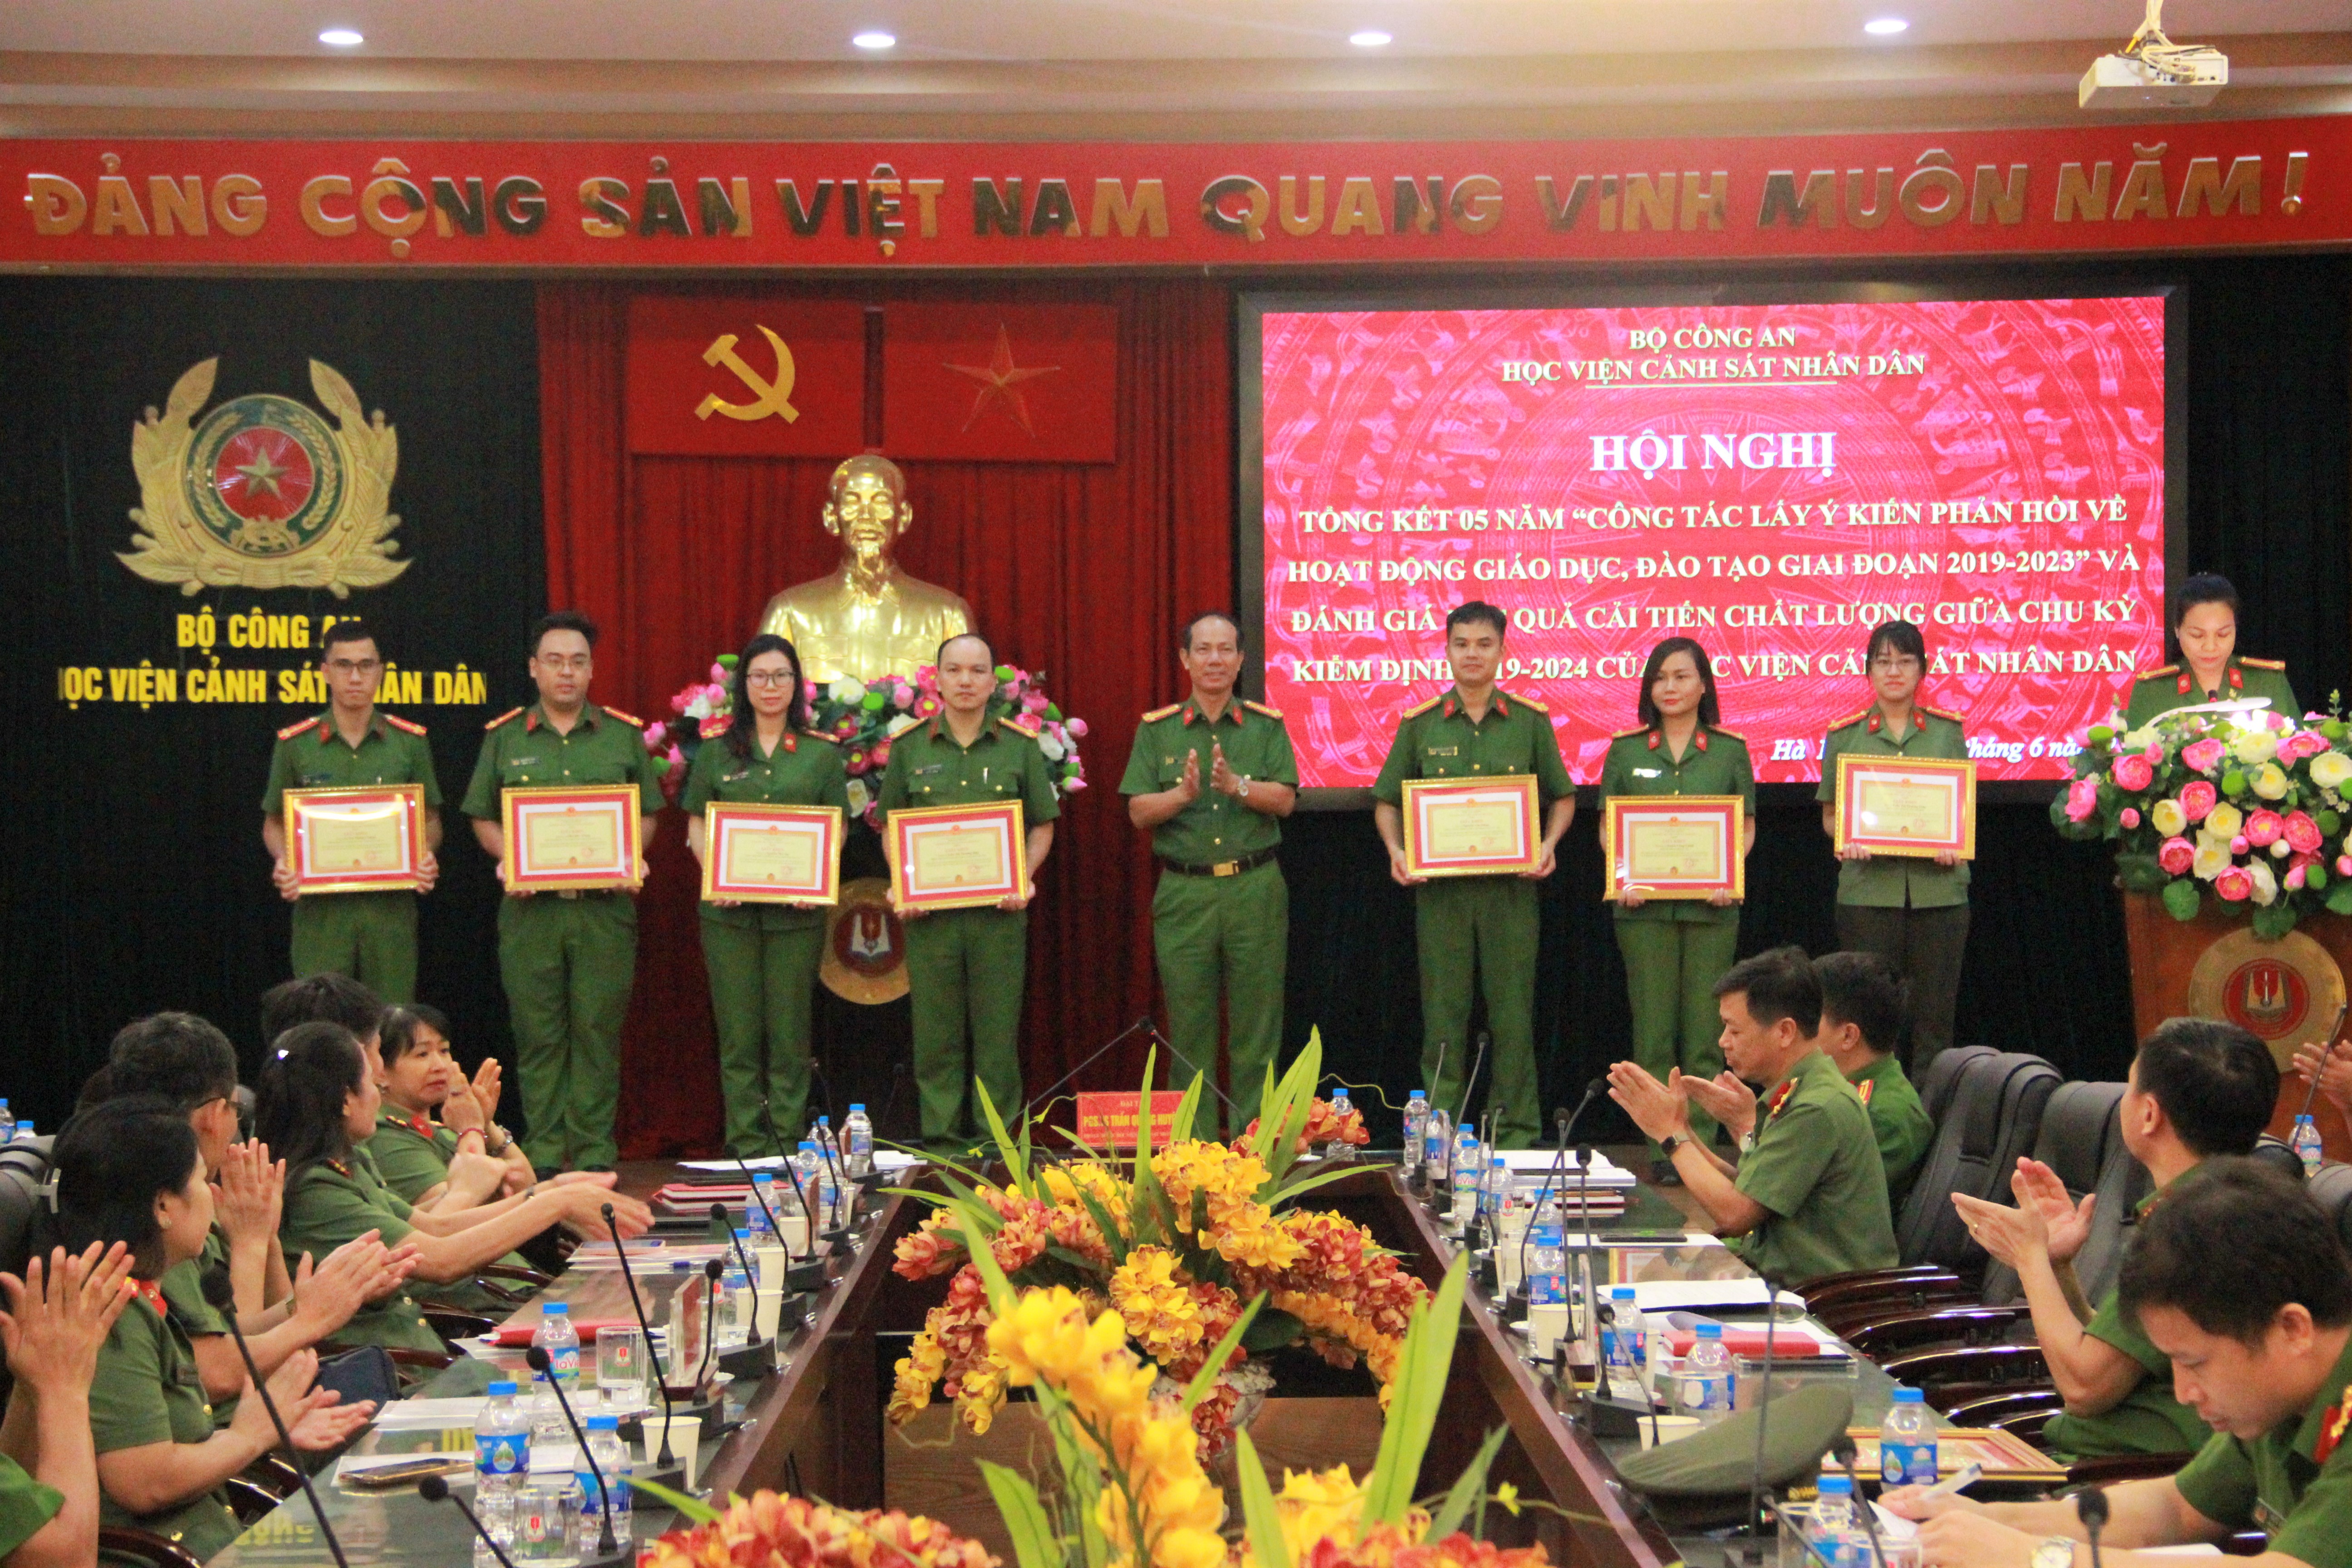 Đại tá Trần Quang Huyên, Phó Giám đốc Học viện CSND trao giấy khen của Giám đốc Học viện CSND cho các cá nhân và tập thể có thành tích xuất sắc trong Tổng kết 05 năm công tác lấy ý kiến phản hồi đối với hoạt  động giáo dục, đào tạo tại Học viện CSND giai đoạn 2019 - 2023